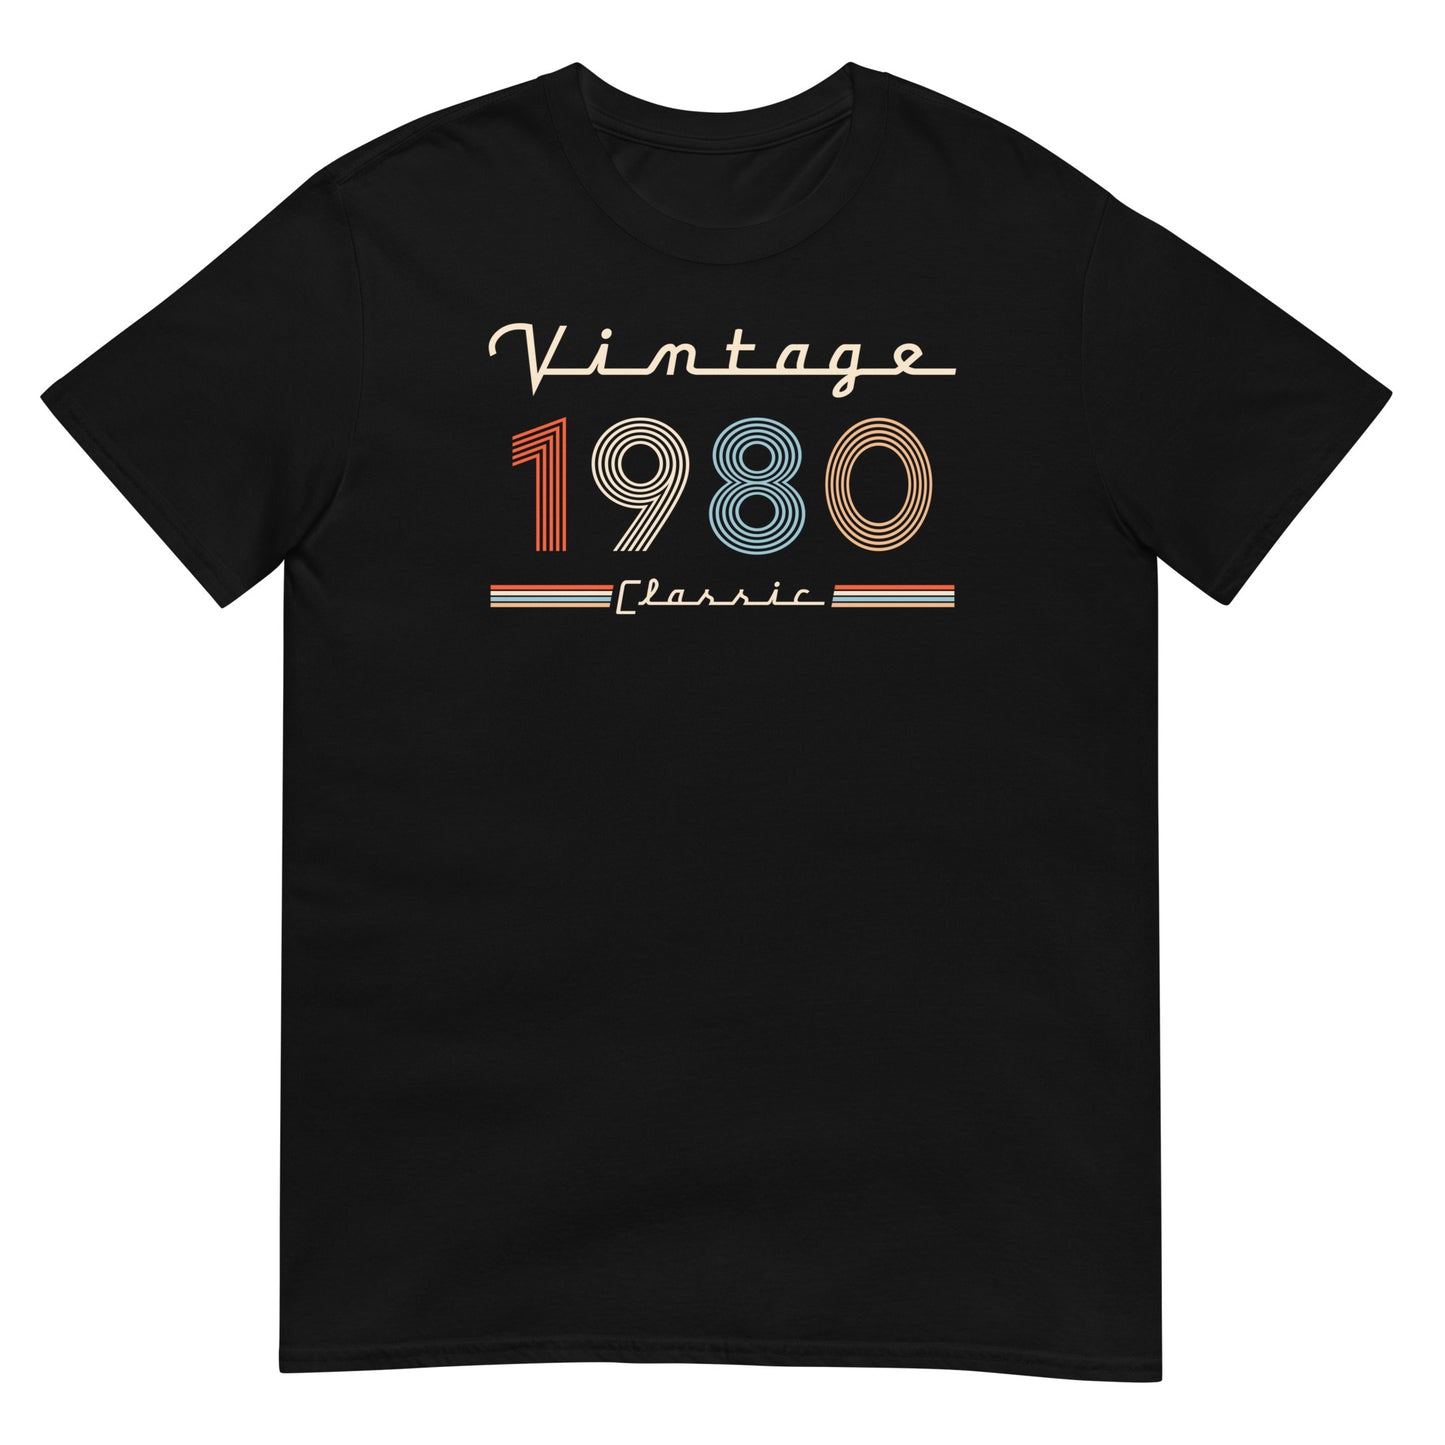 Camiseta 1980 - Vintage Classic - Cumpleaños